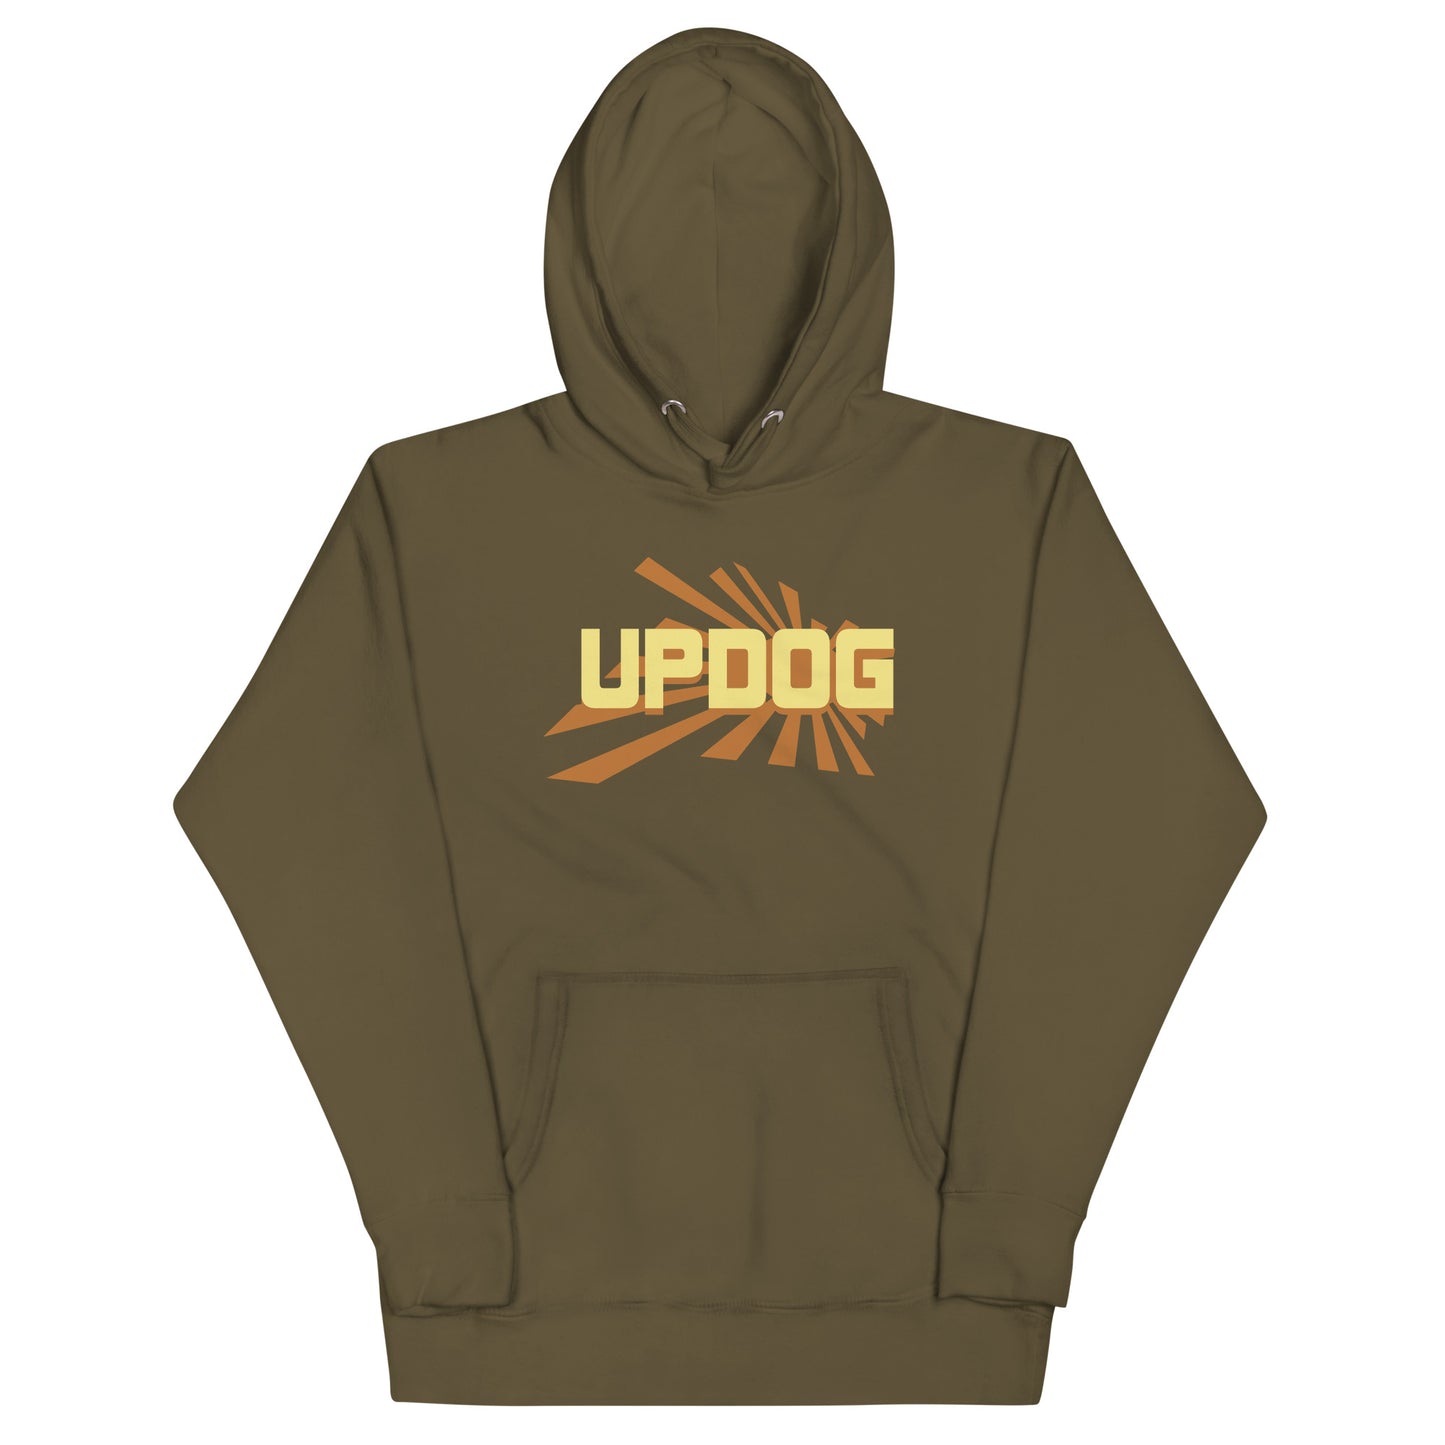 Updog Unisex Hoodie